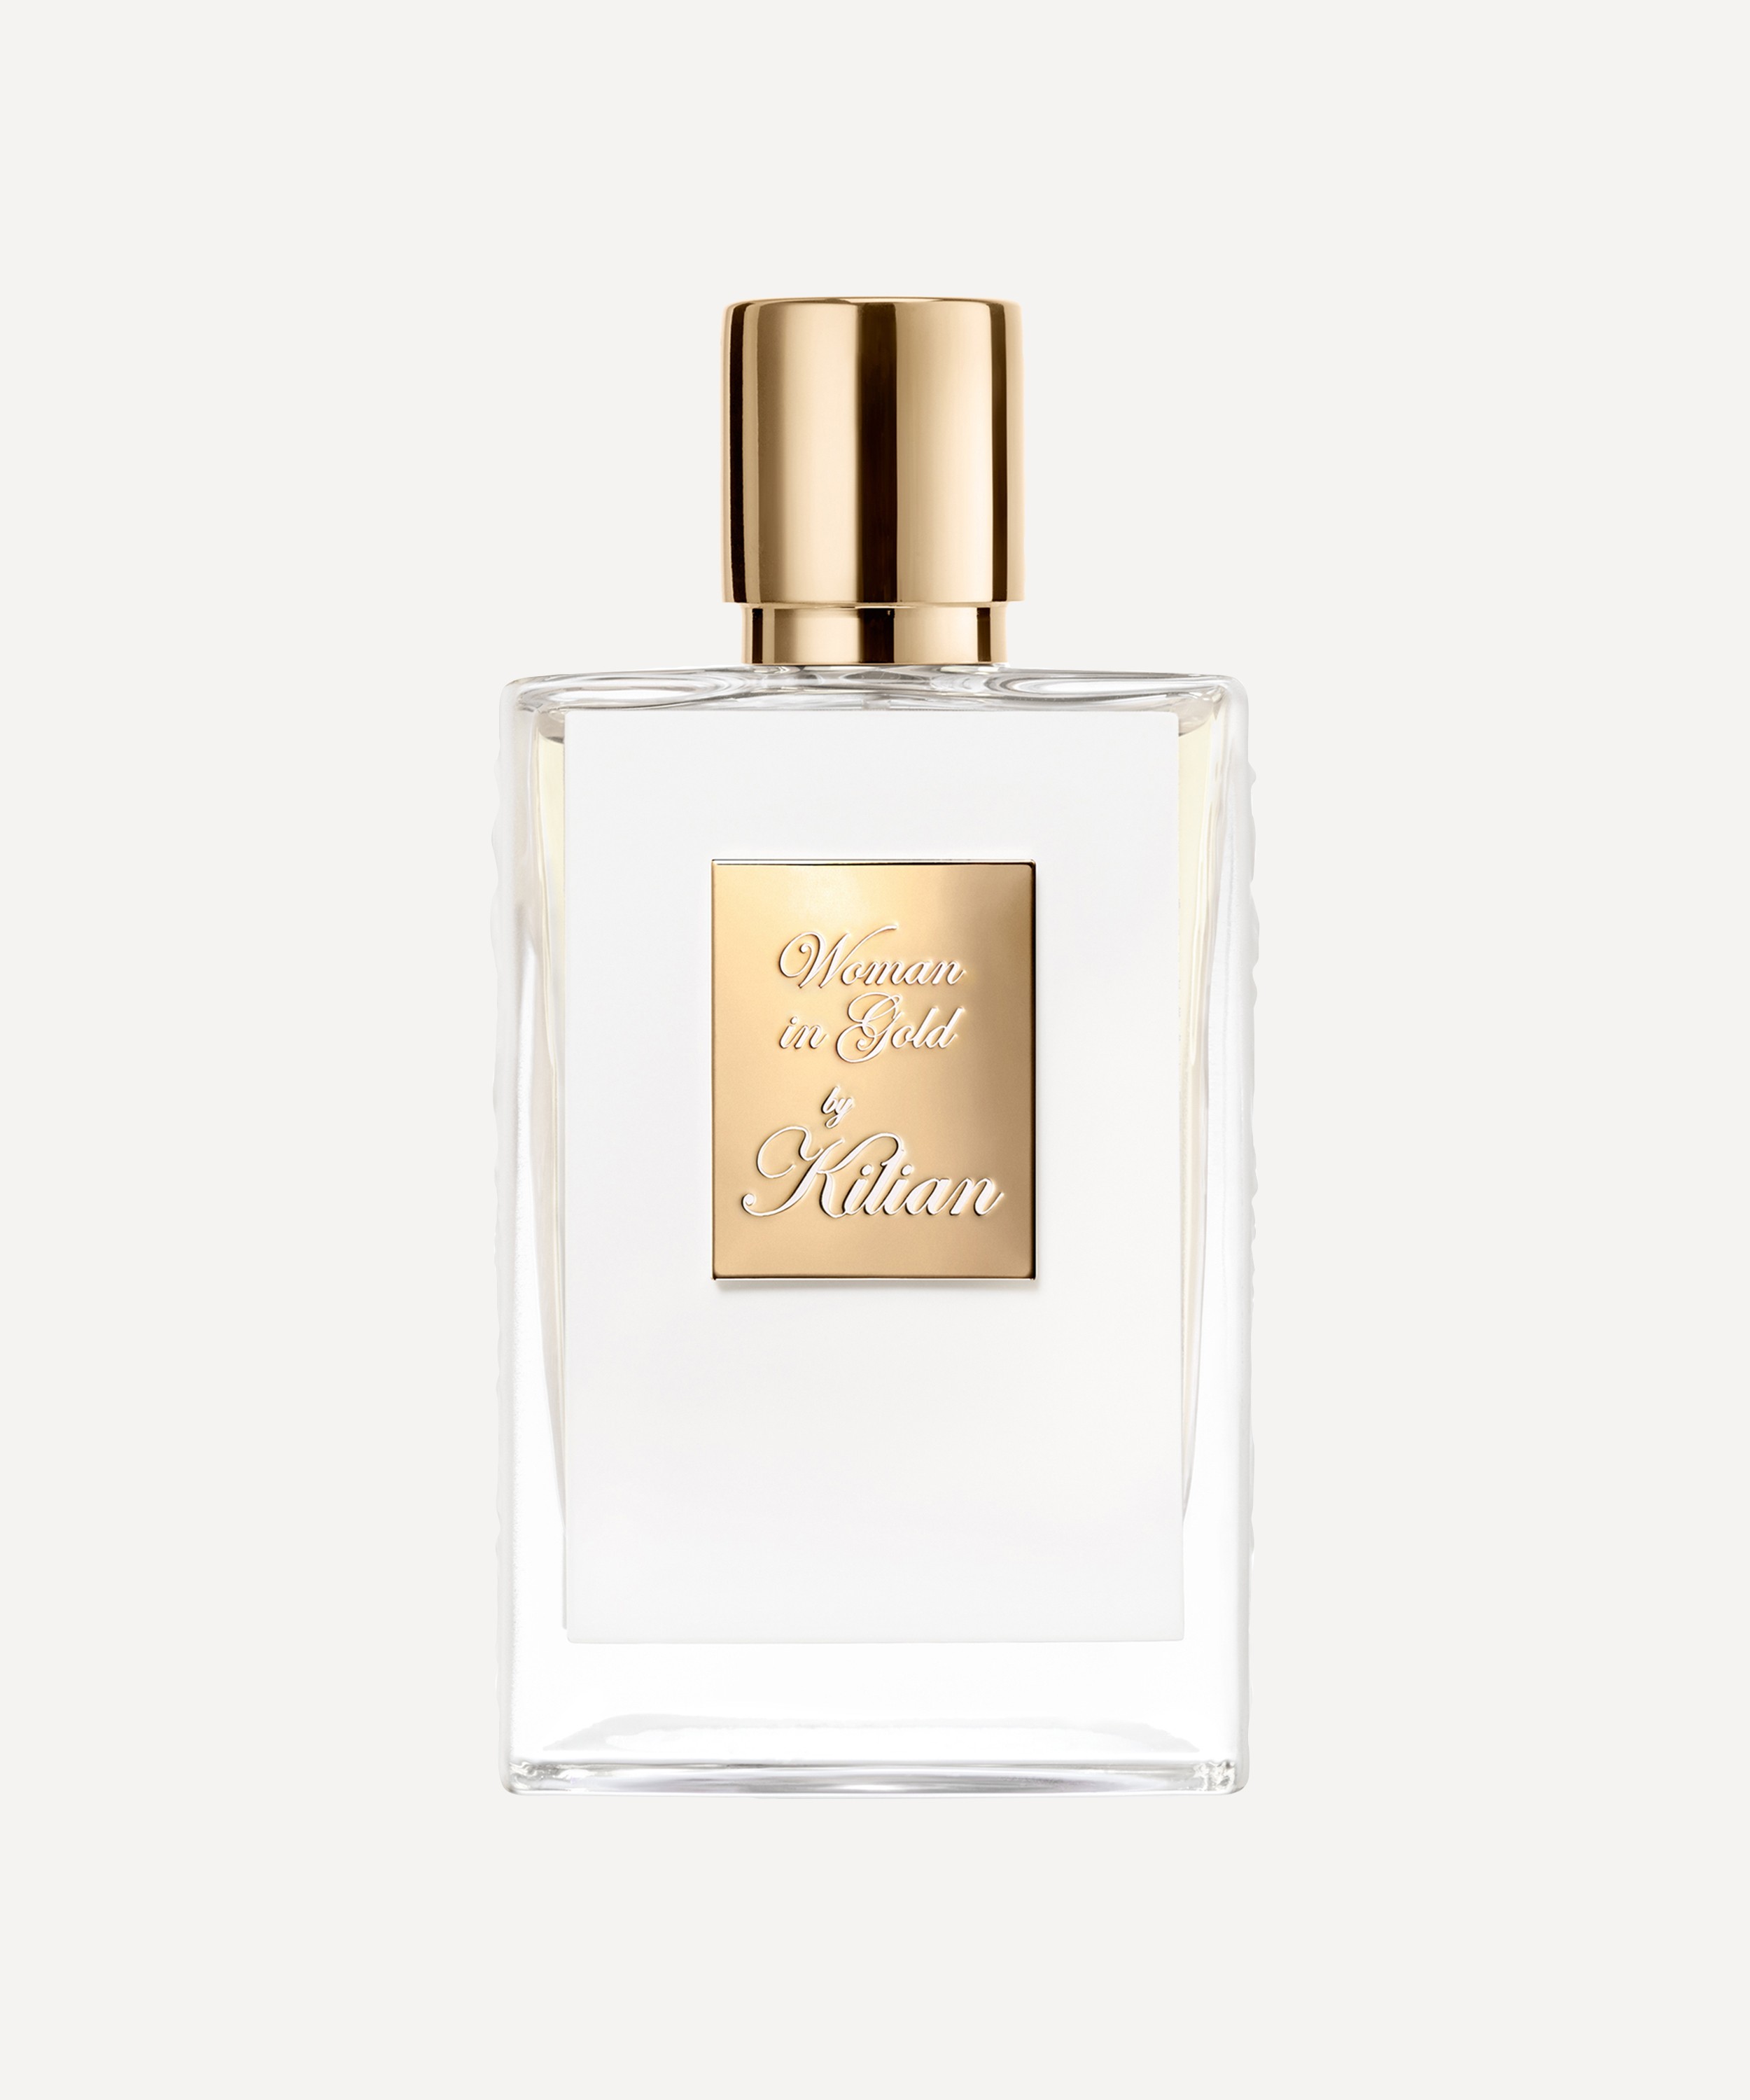 KILIAN PARIS - Woman in Gold Eau de Parfum with Coffret 50ml